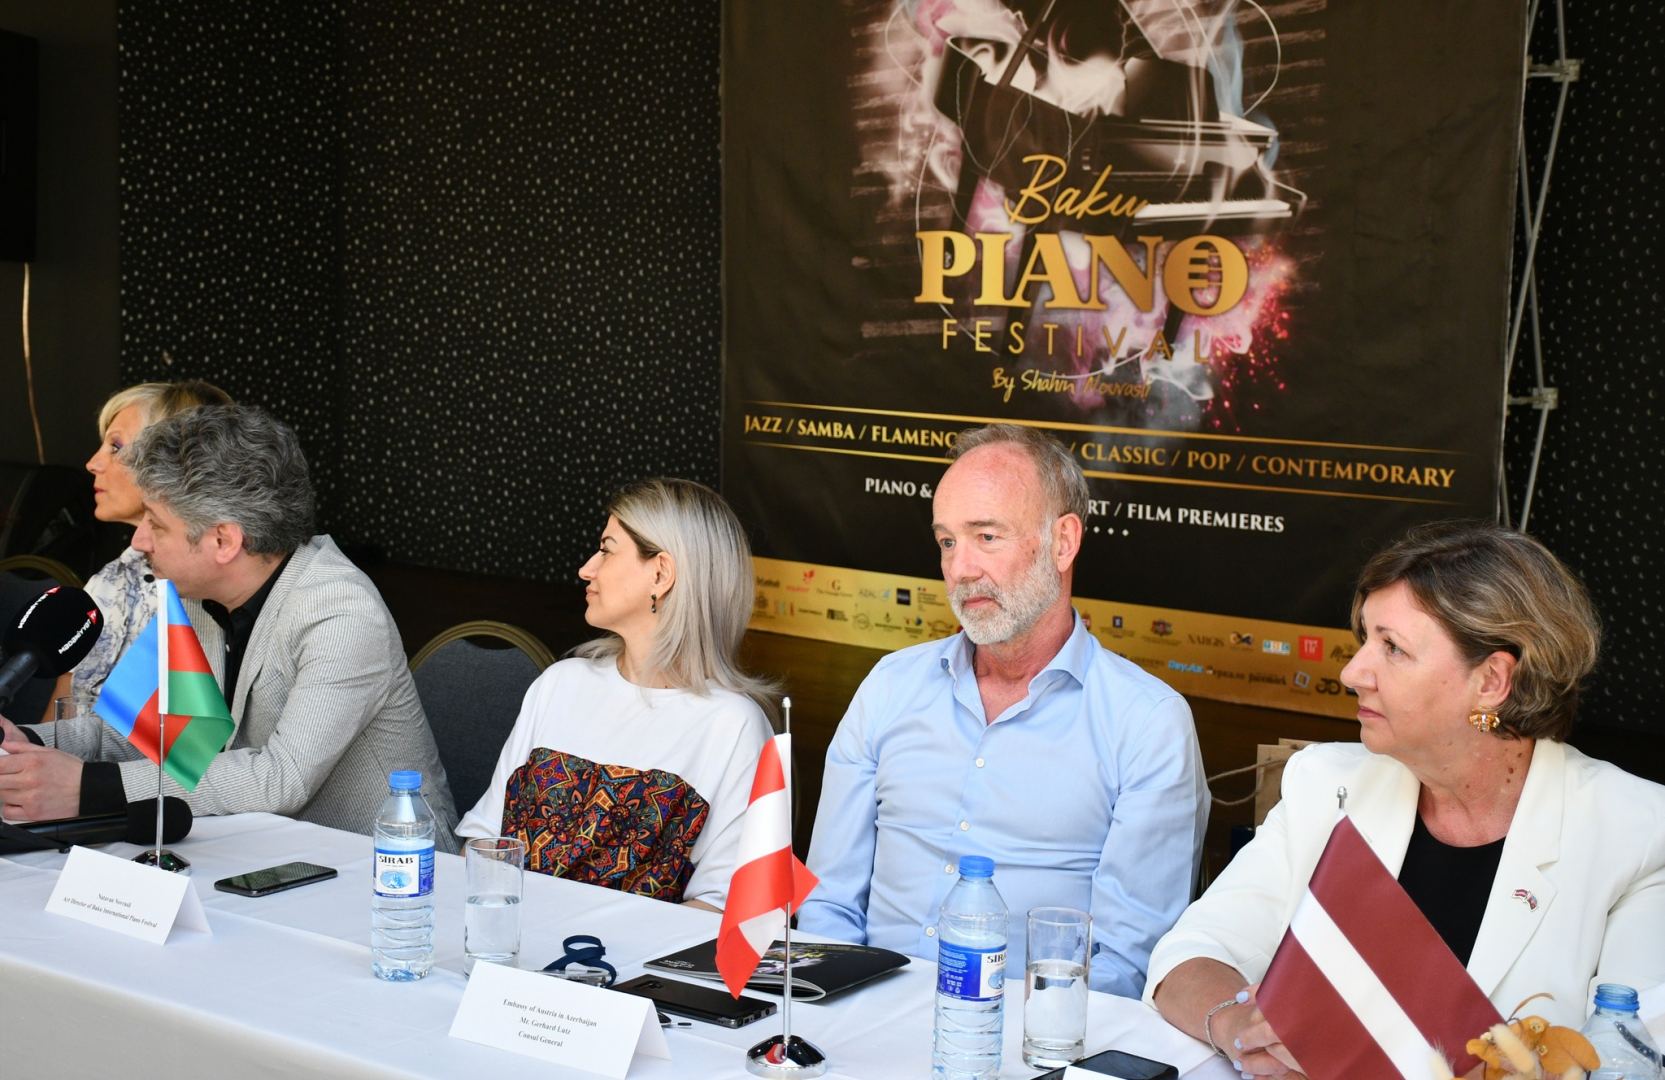 Стартует Baku Piano Festival - слушателей ждет обширная и разножанровая программа (ФОТО)